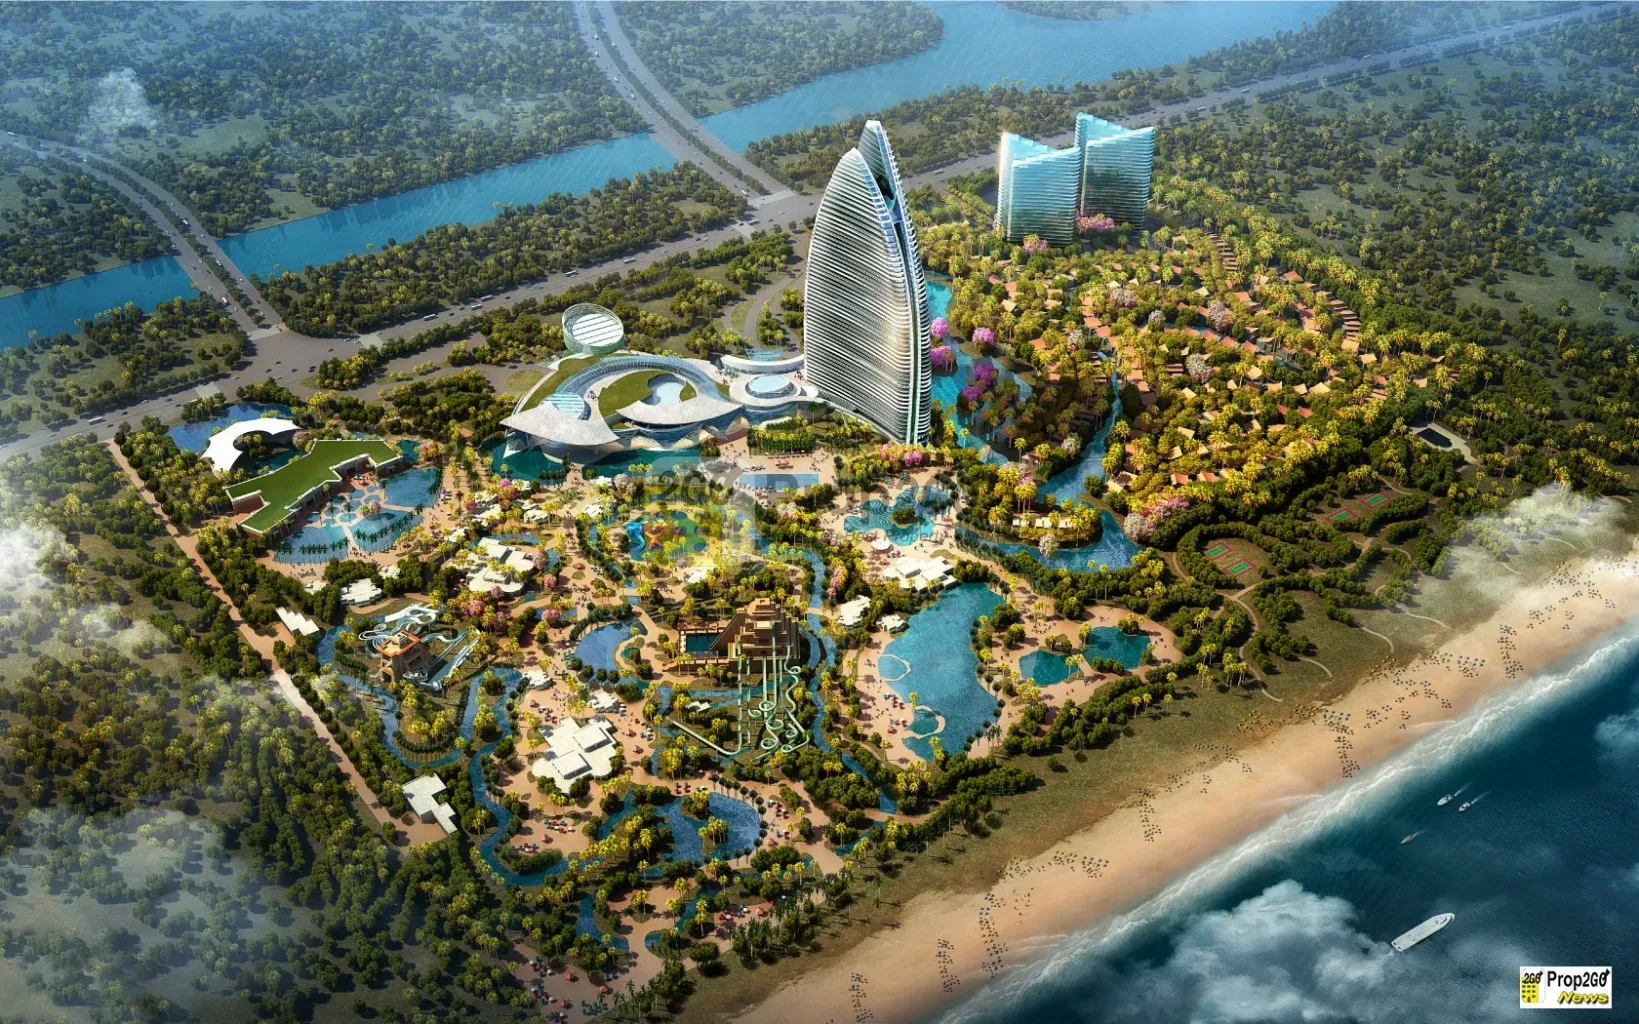 Atlantis Resort China Seluas 62 hektar dengan Aquaventure nan Eksotik dan Unik